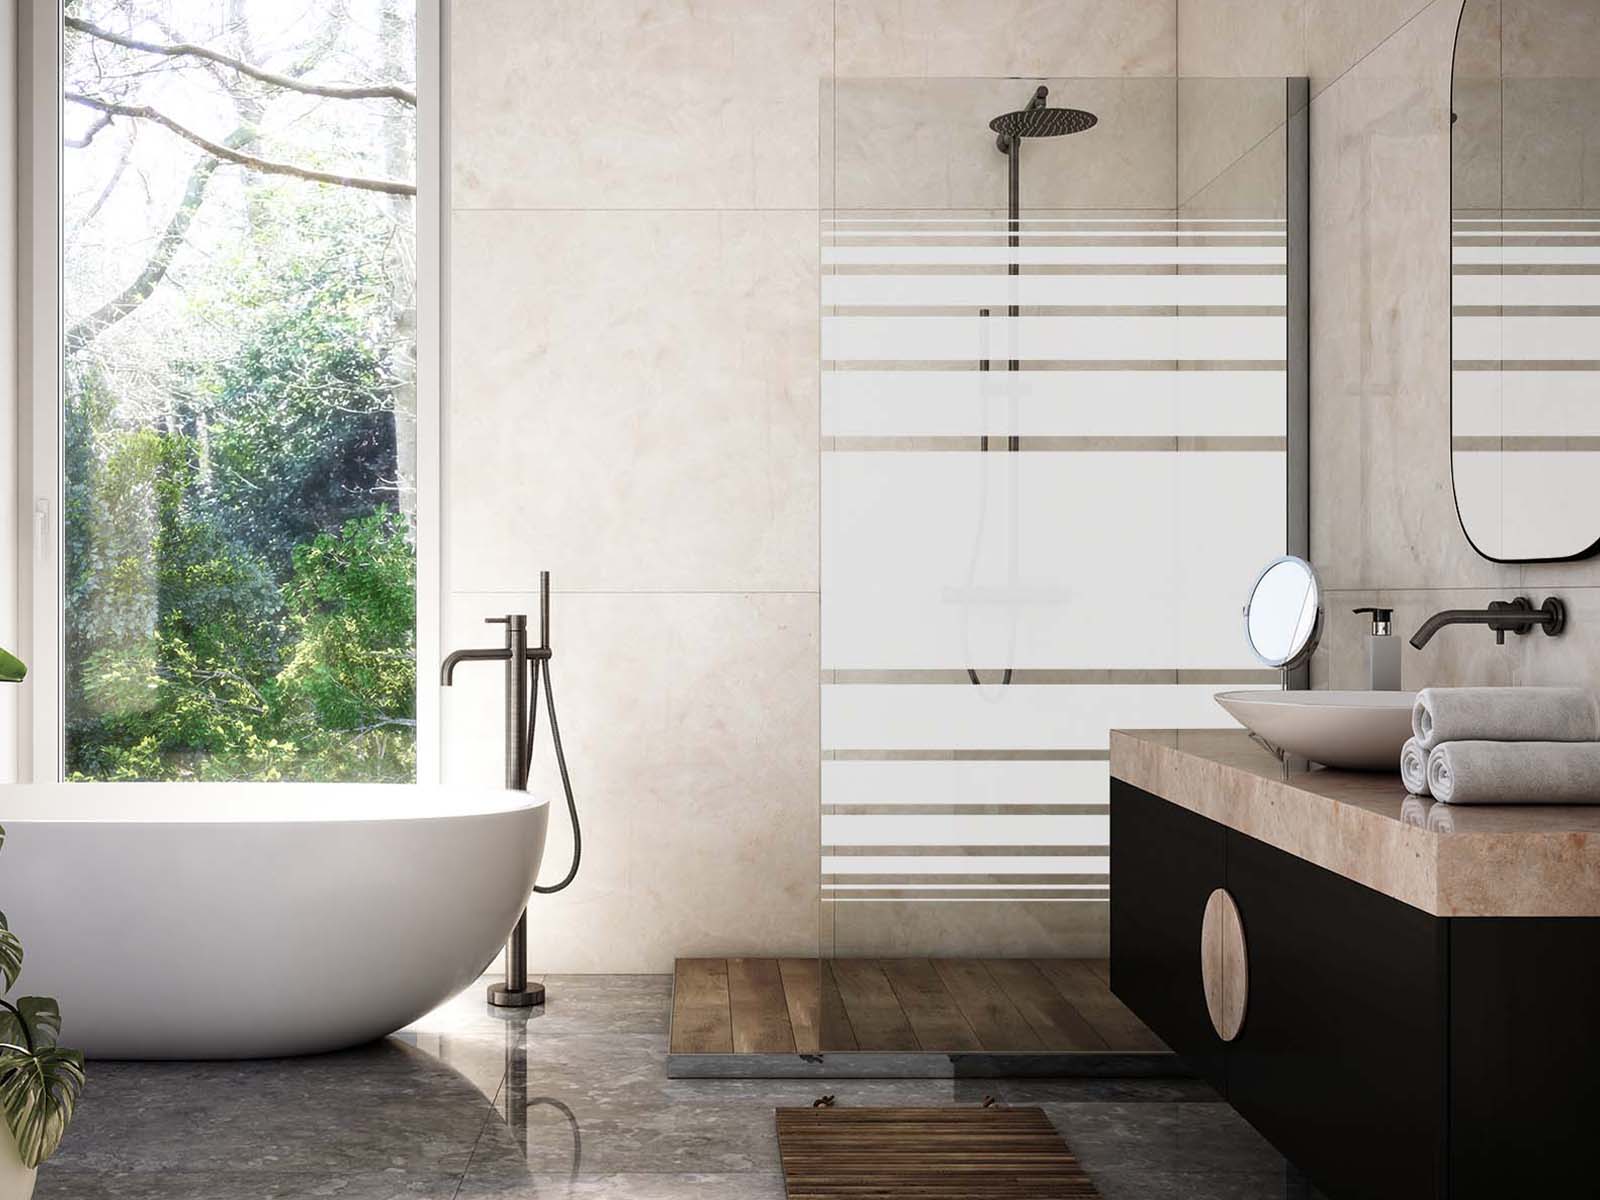 Duschwand mit Streifenverlauf Muster neben freistehender Badewanne in modernem hellem Bad